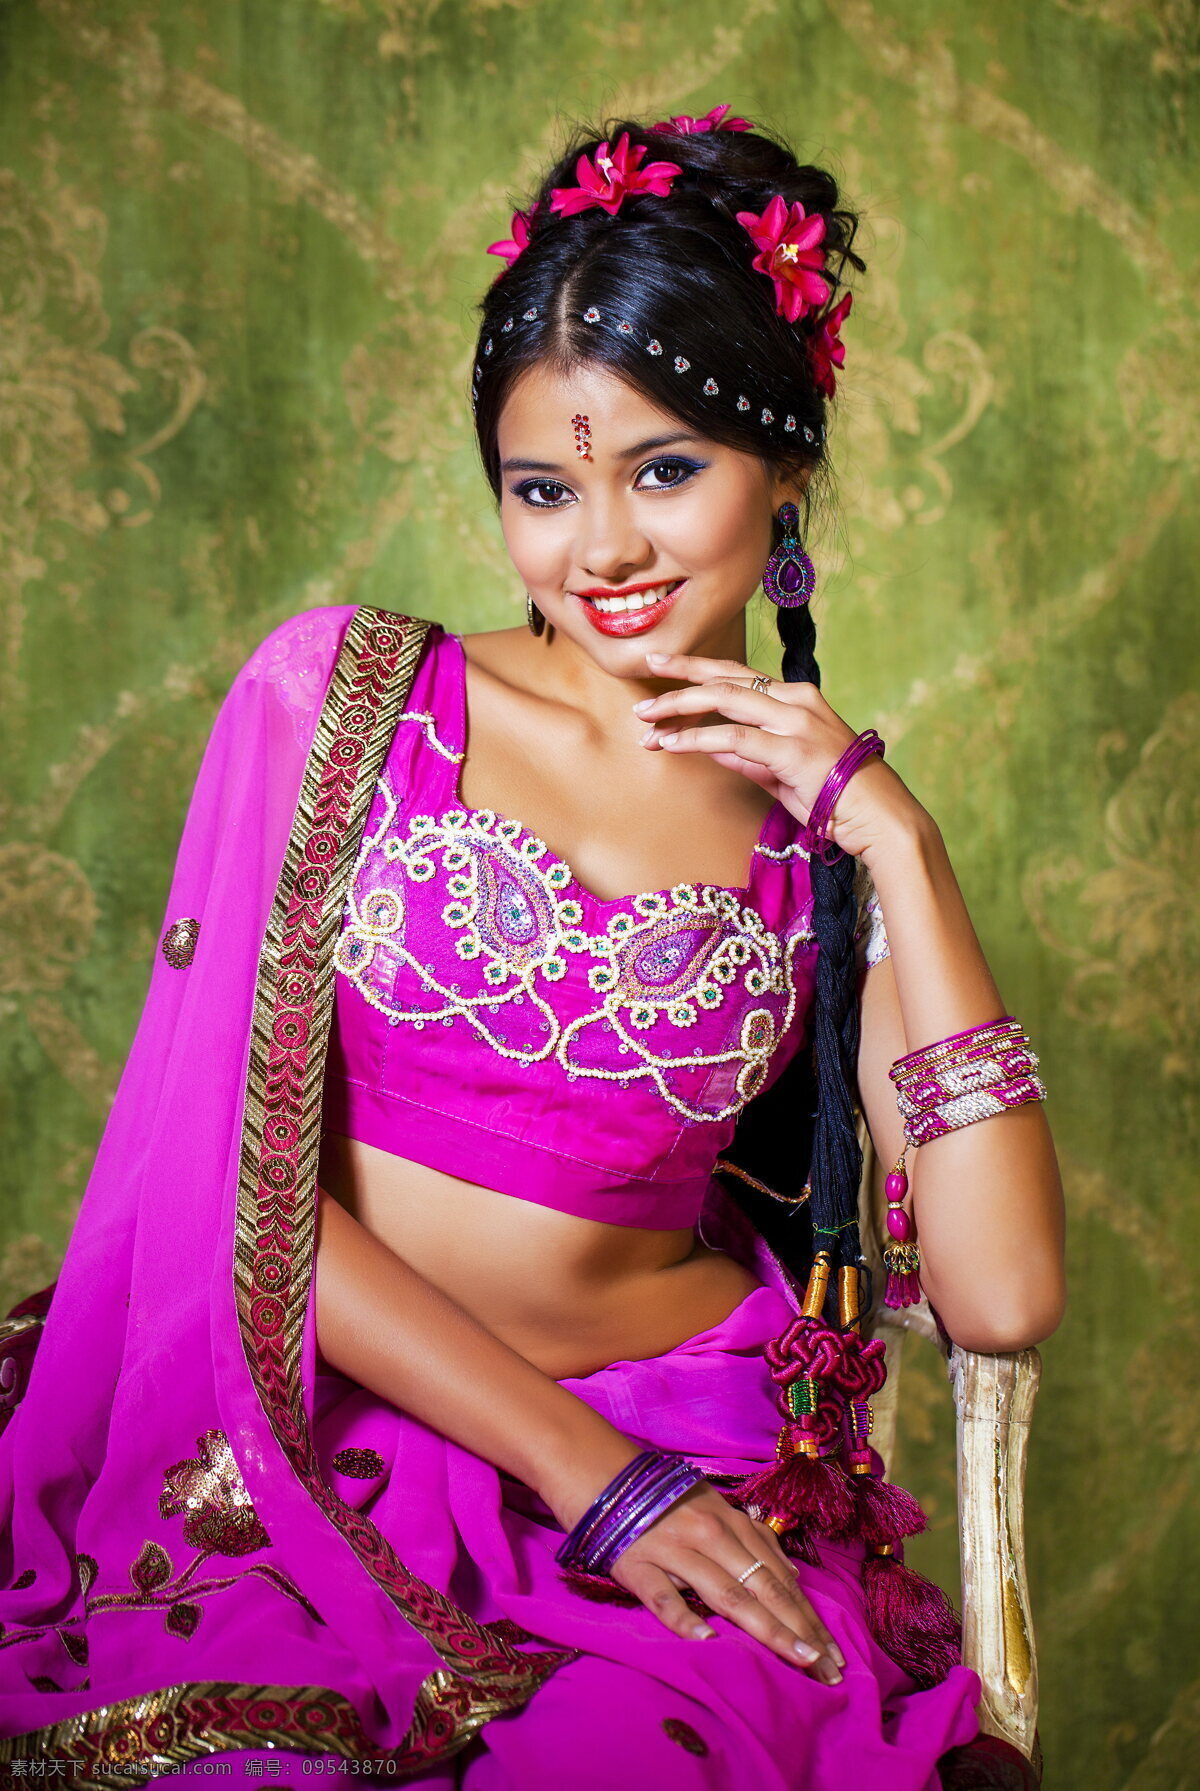 性感 印度 裙装 美女图片 印度美女 性感美女 印度装 舞裙